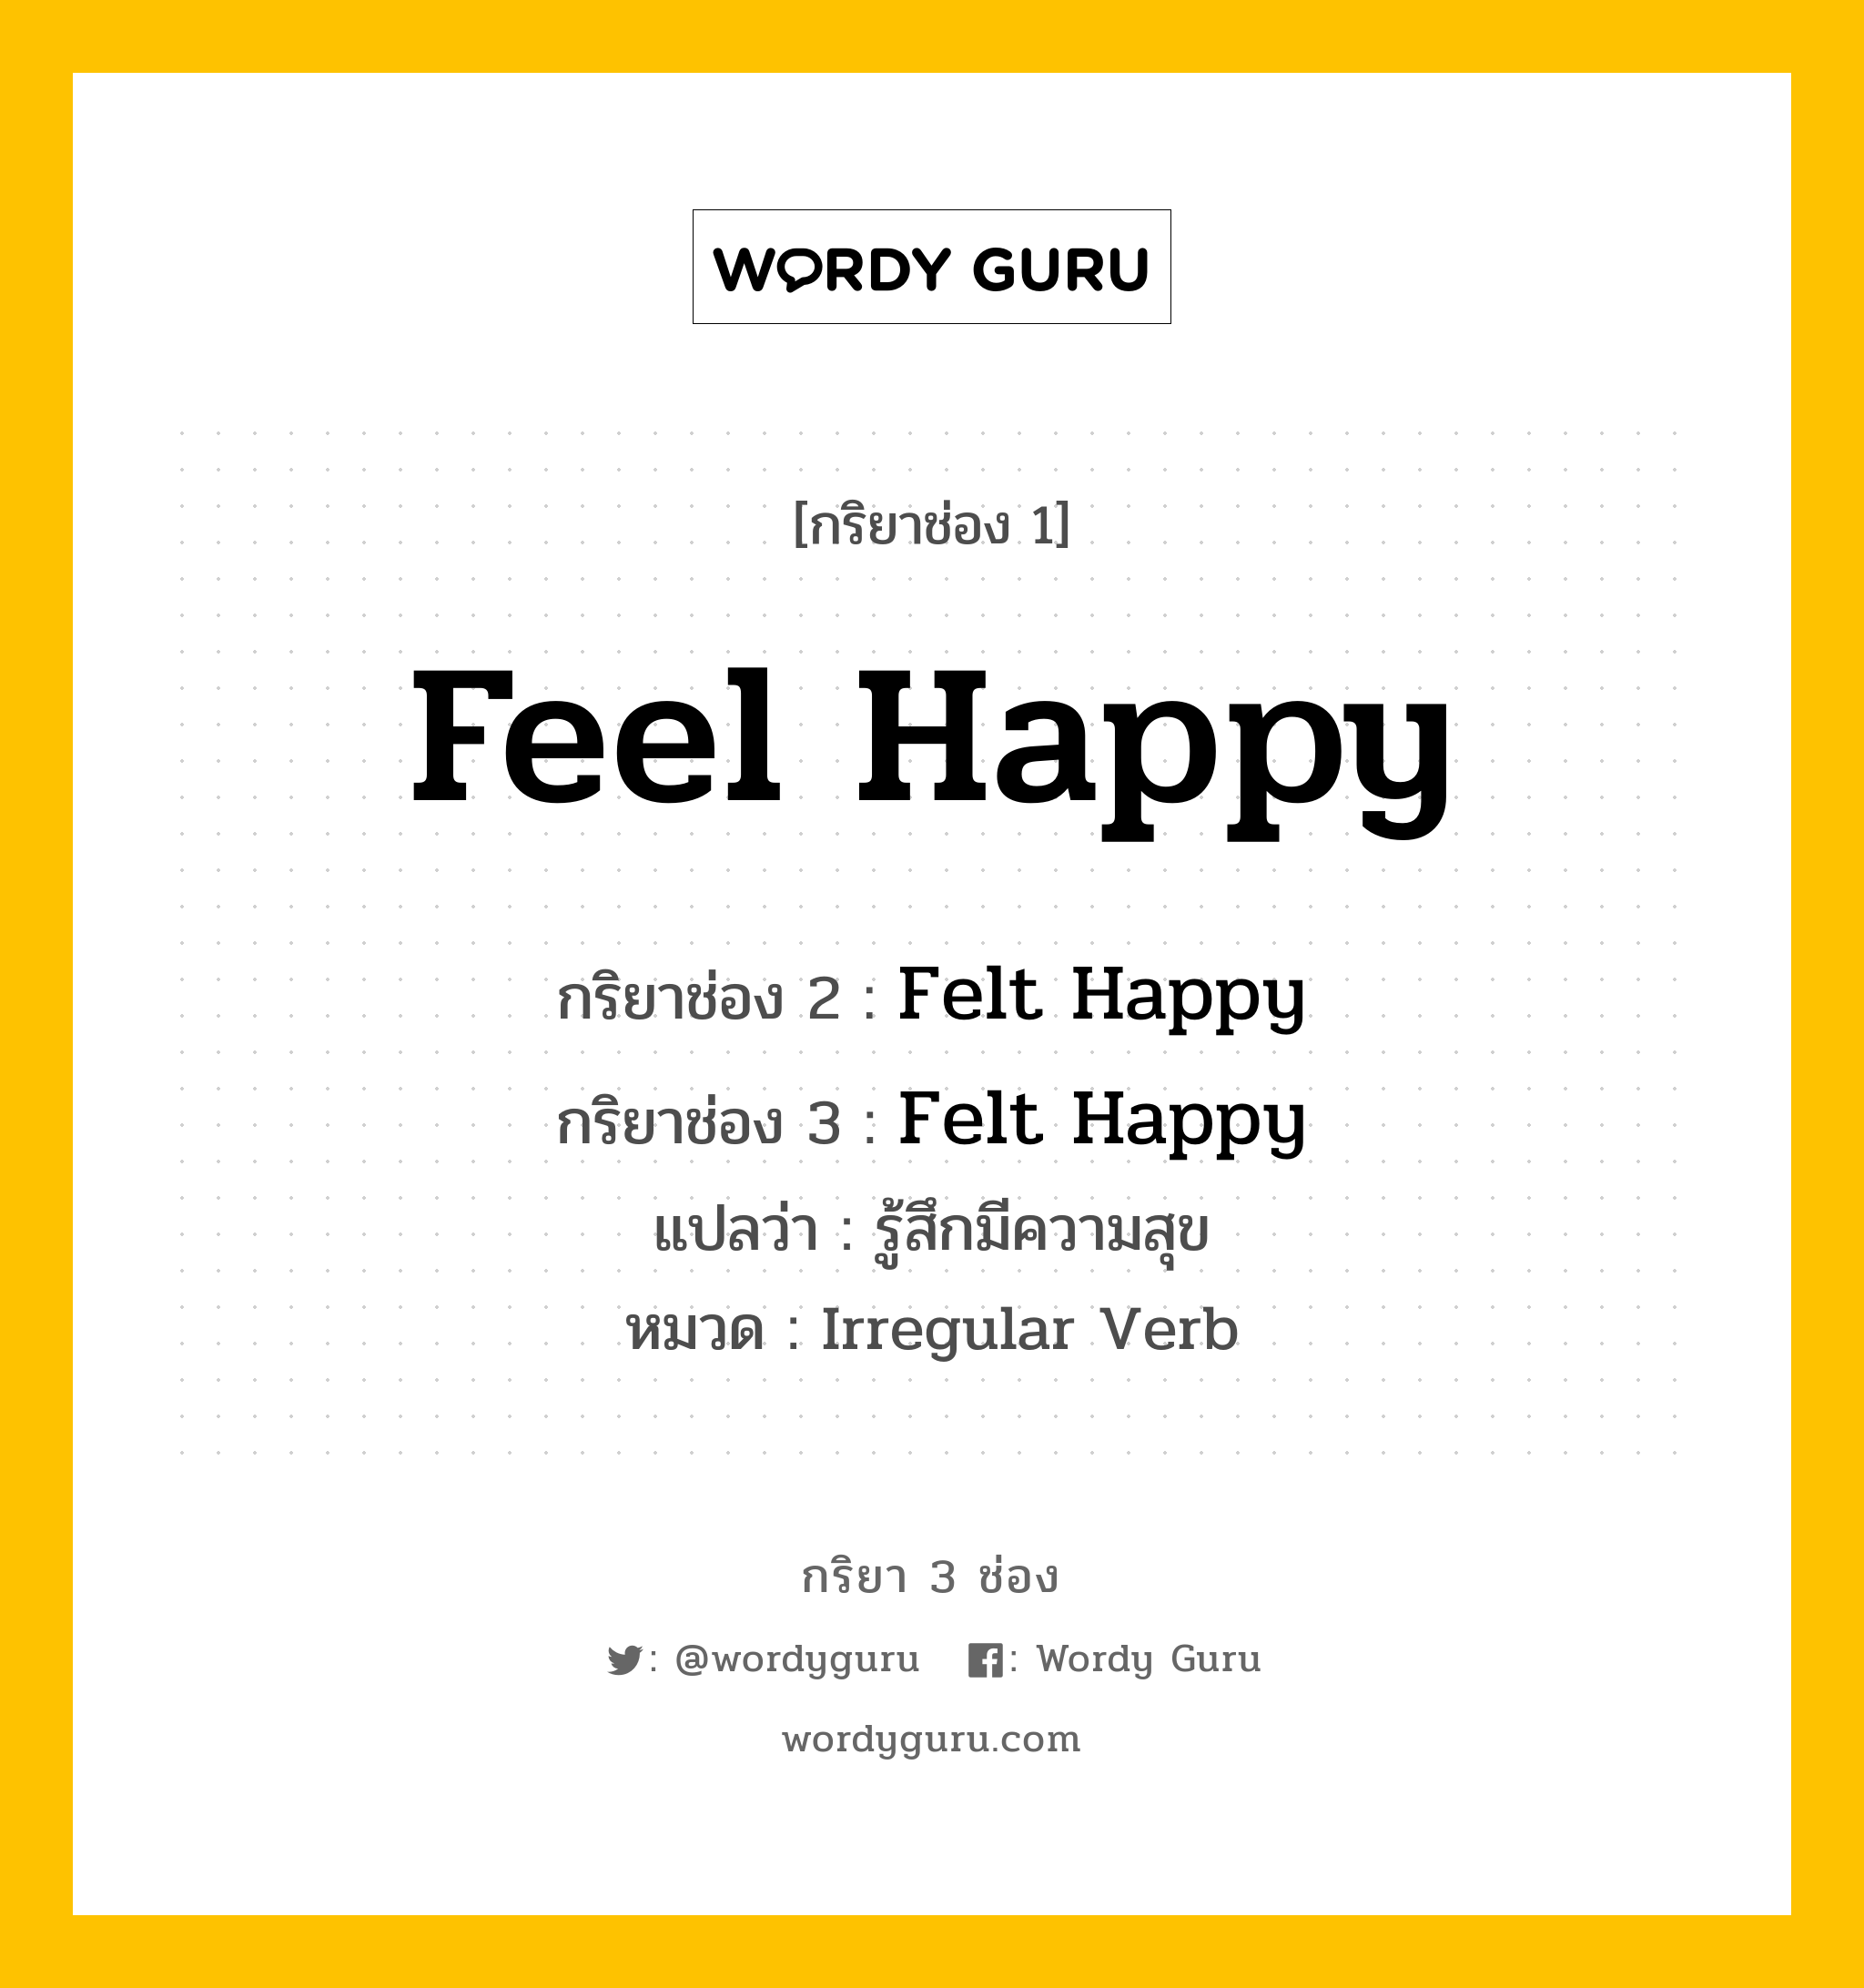 Feel Happy มีกริยา 3 ช่องอะไรบ้าง? คำศัพท์ในกลุ่มประเภท Irregular Verb, กริยาช่อง 1 Feel Happy กริยาช่อง 2 Felt Happy กริยาช่อง 3 Felt Happy แปลว่า รู้สึกมีความสุข หมวด Irregular Verb หมวด Irregular Verb